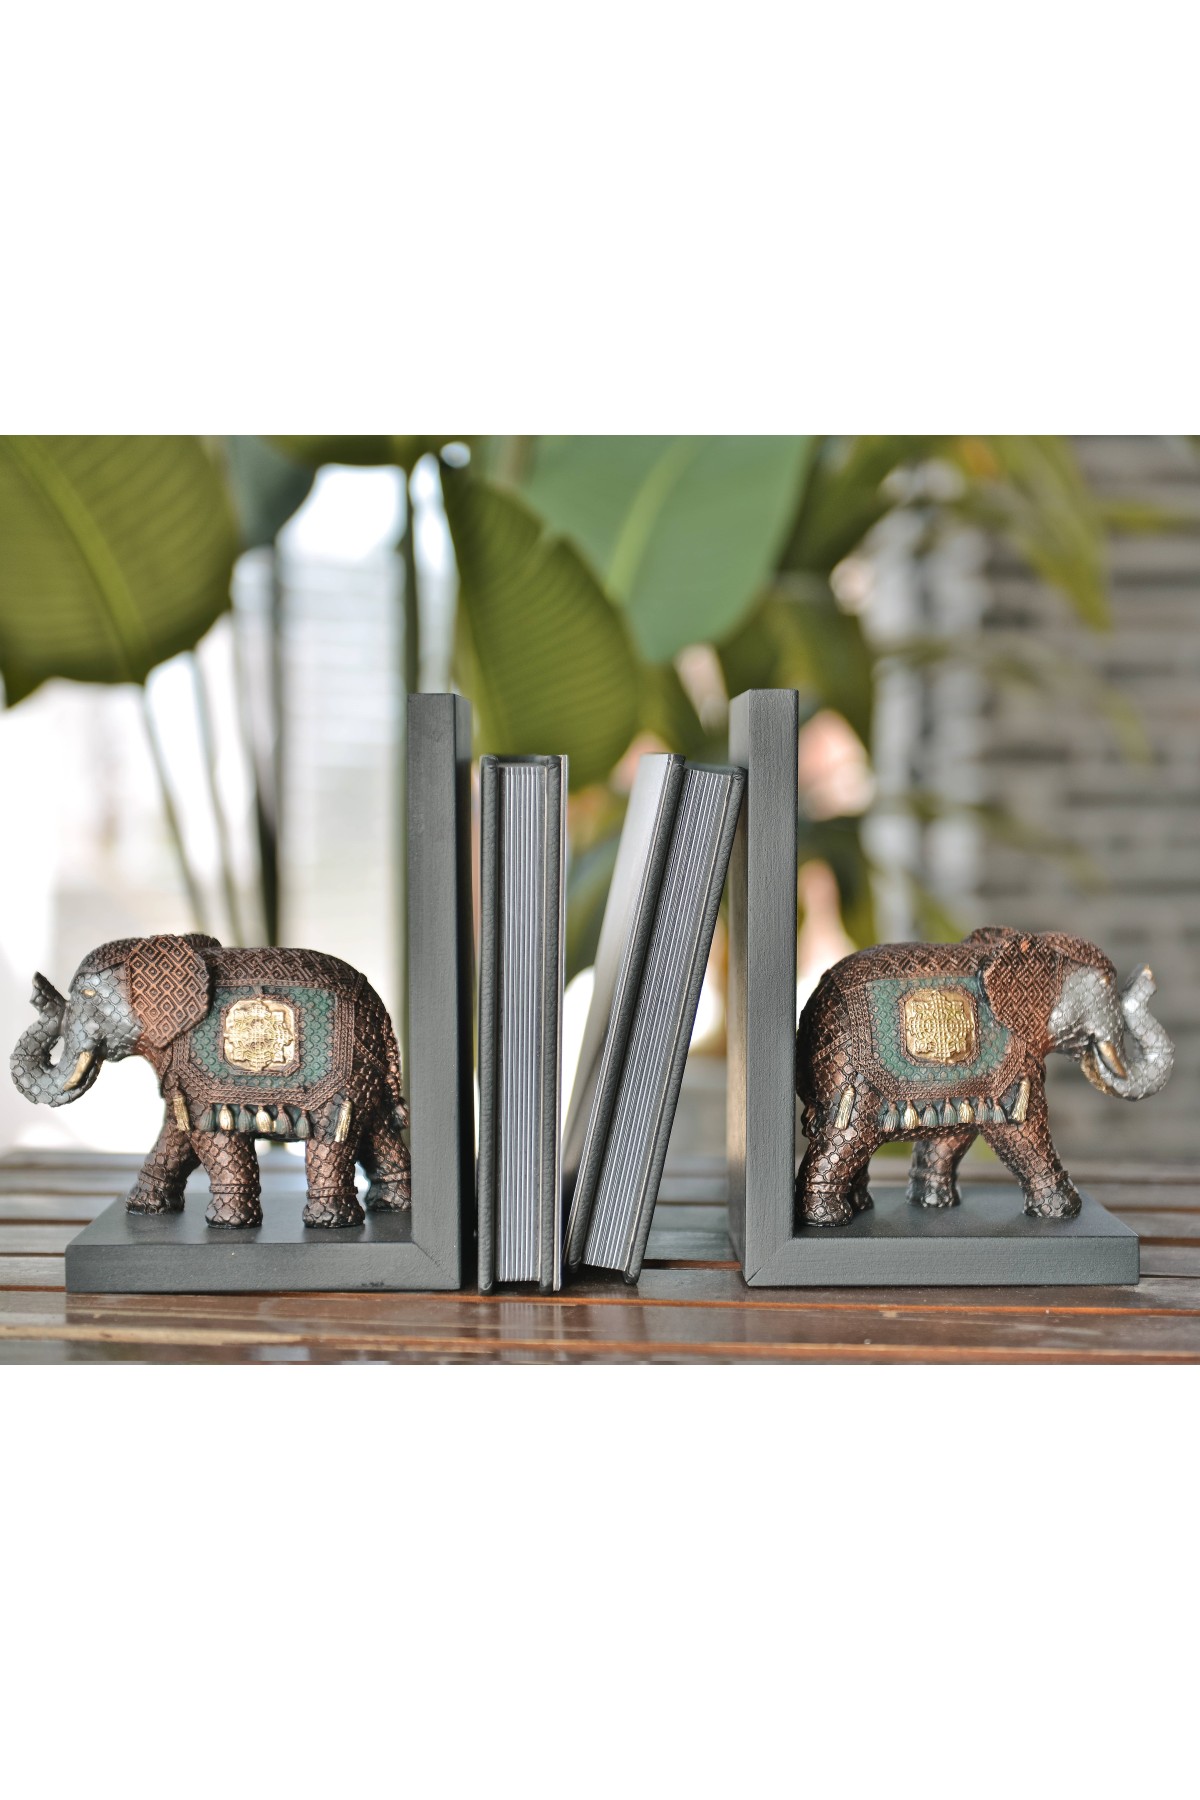 Elephant figured Book holder colorful quality craftsmanship trinket